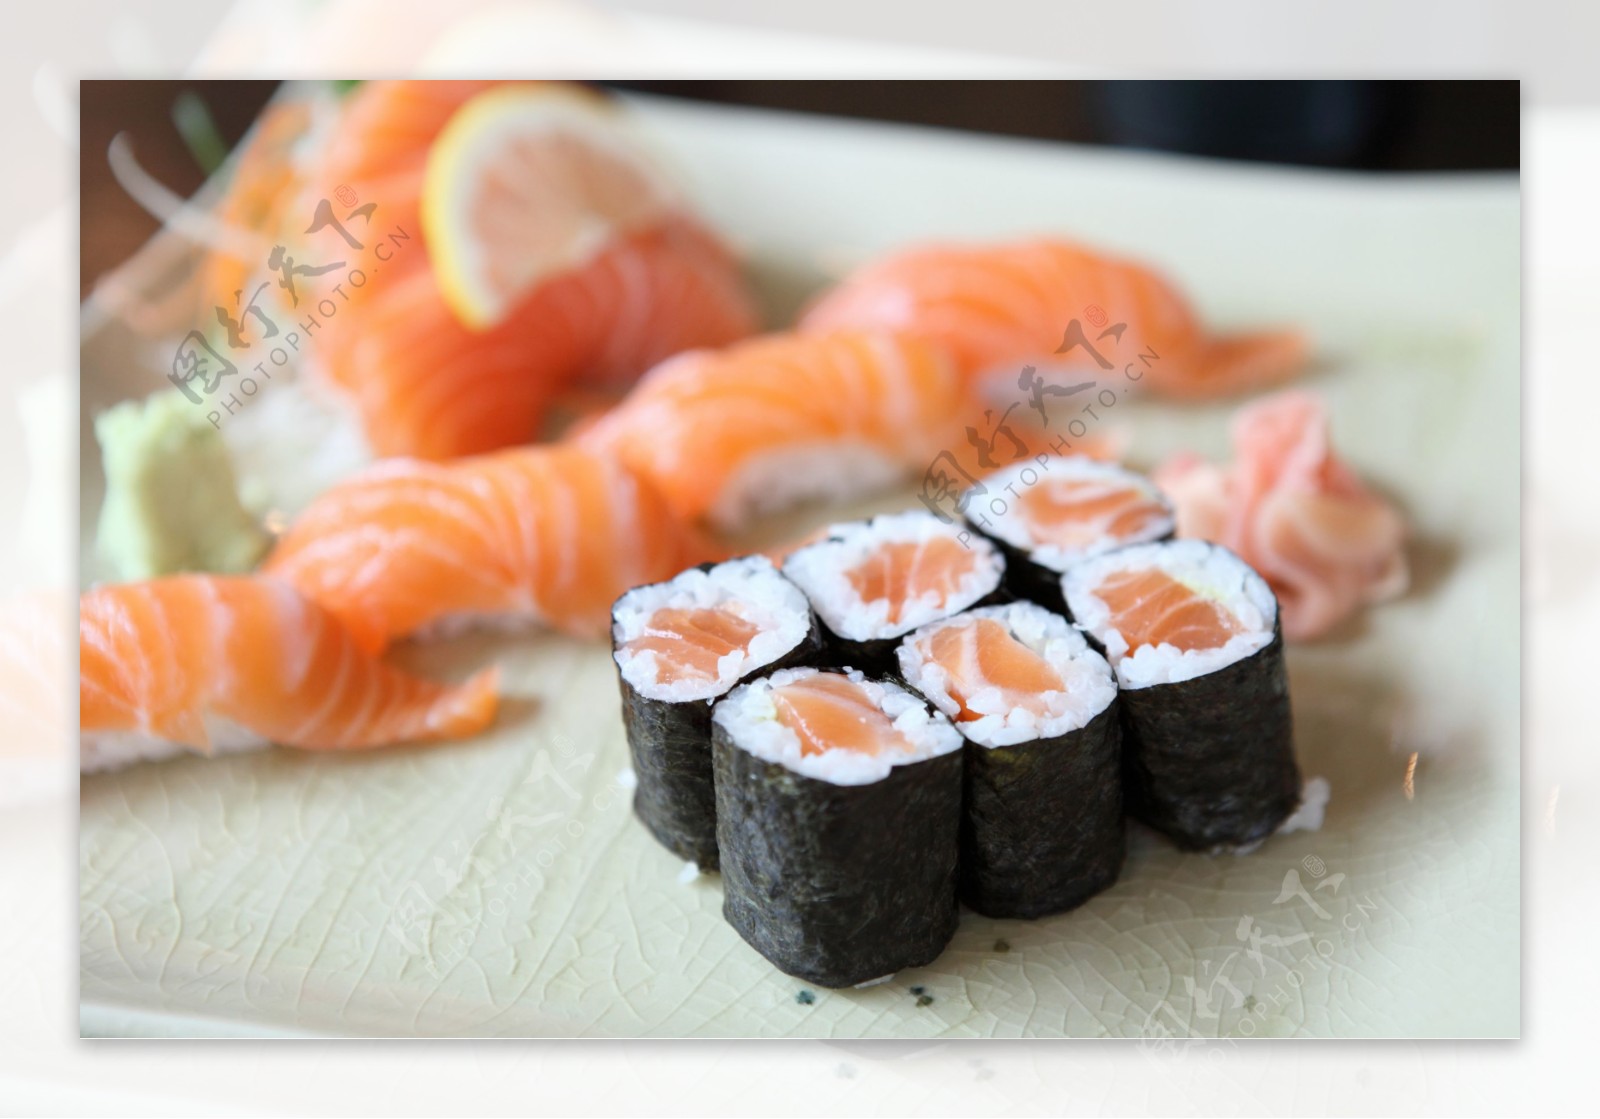 寿司生鱼片图片